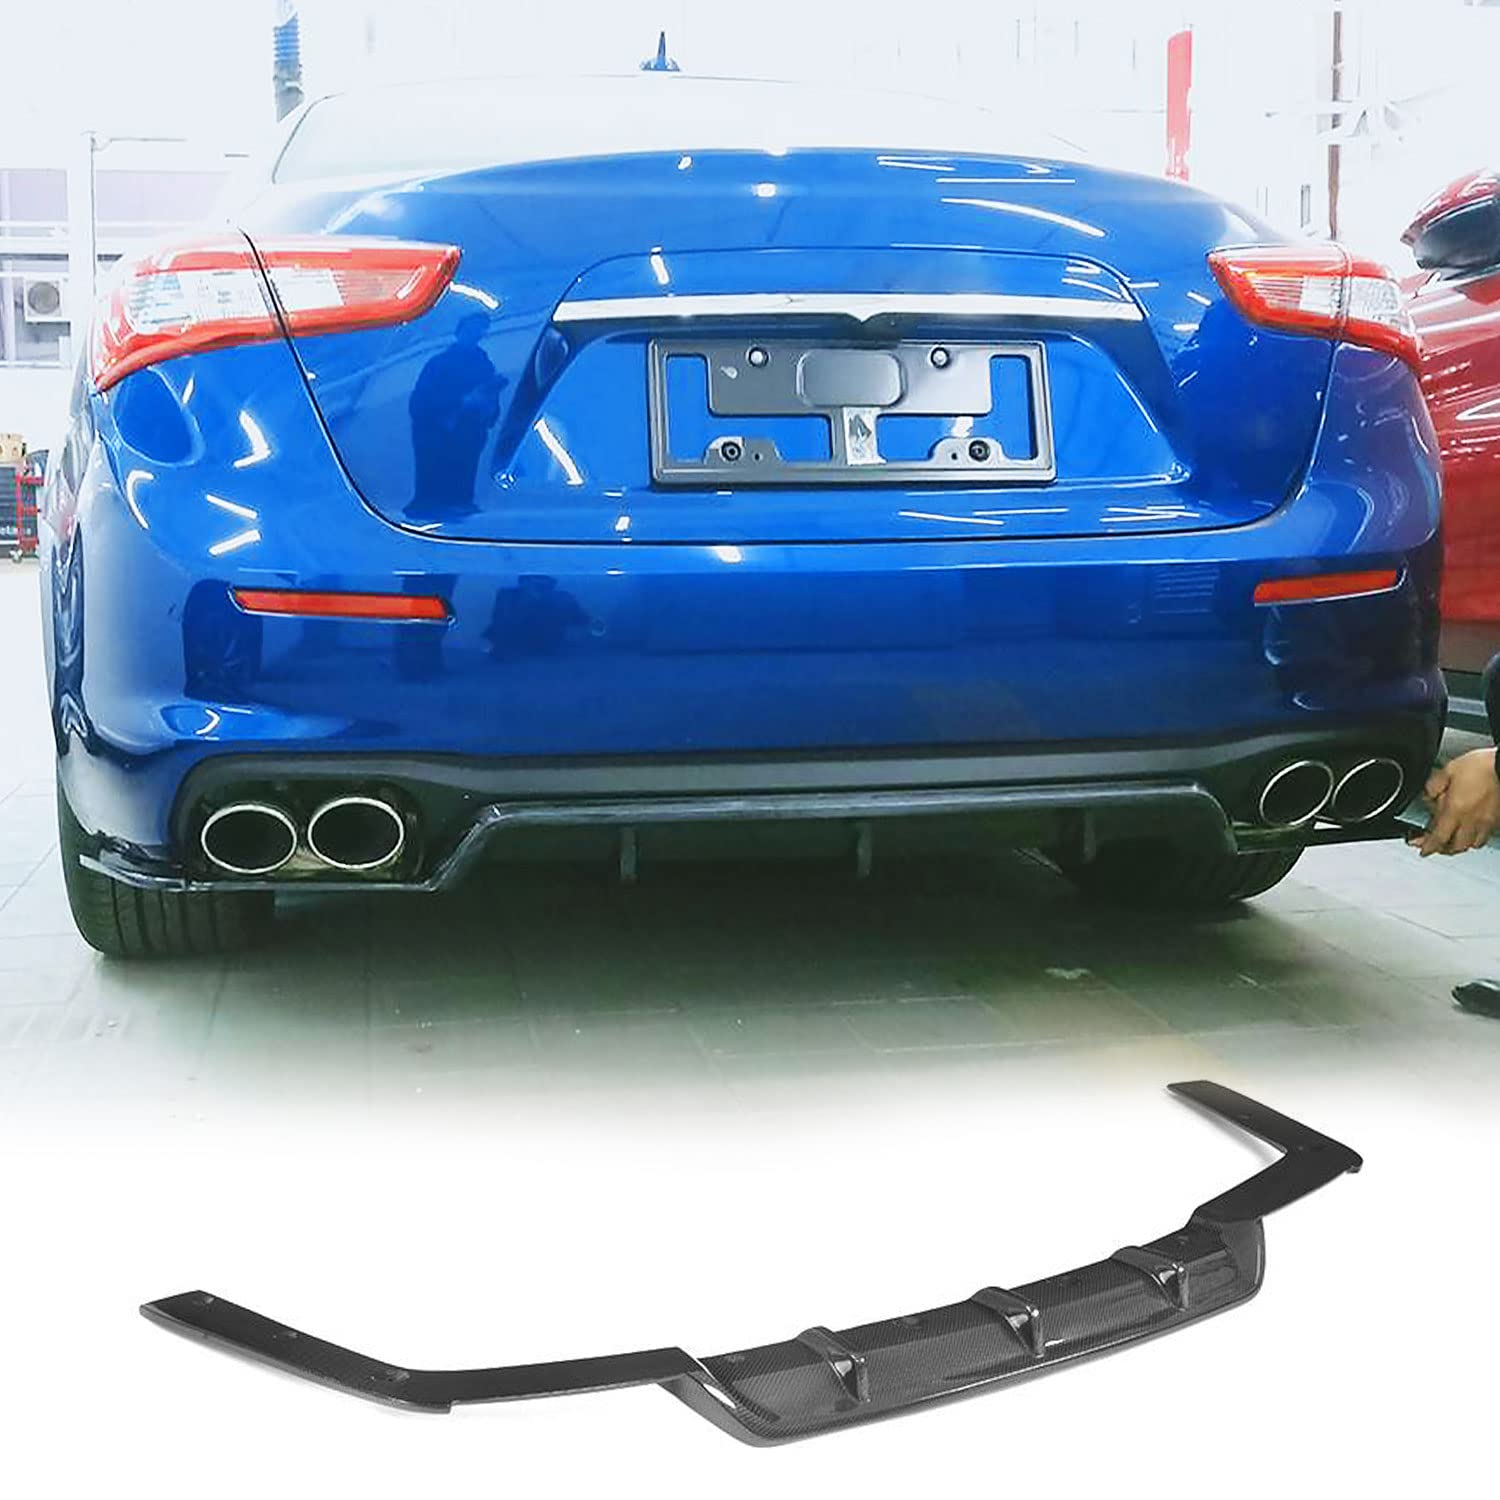 Heckdiffusor Passend für Maserati Ghibli Basis-Limousine 2018-2019 Teile Kohlefaser Unterer Stoßfänger Diffusor Spoiler Karosserie Kits Werksverkauf von DBERFSF